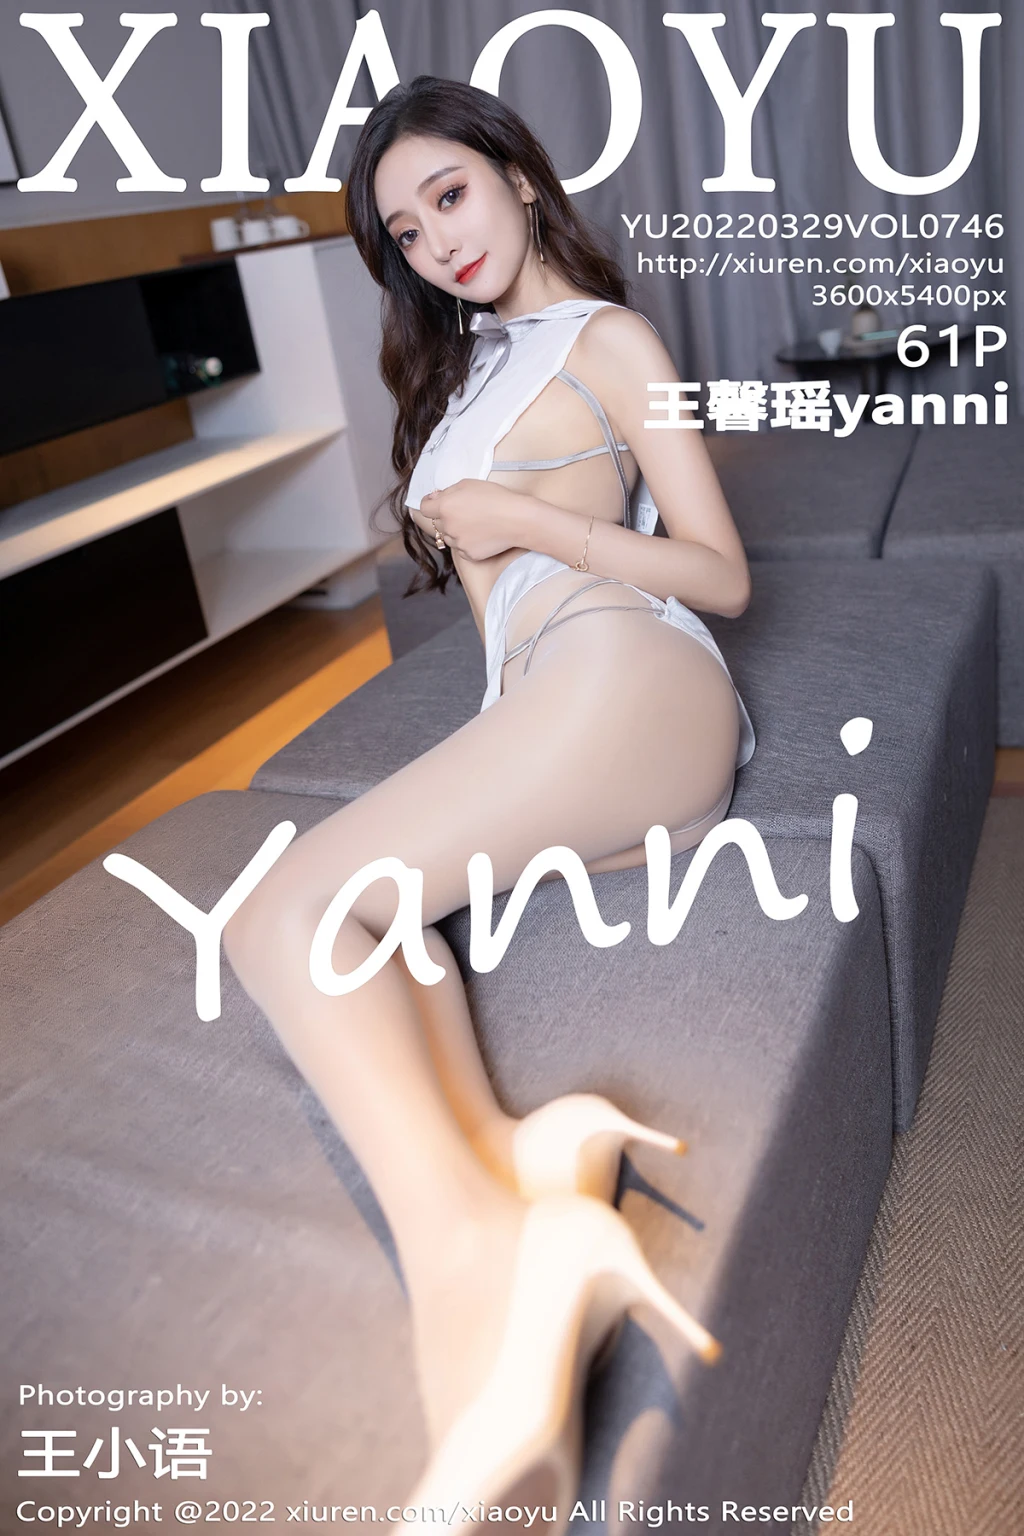 XiaoYu Vol.746: Yanniimage No.34